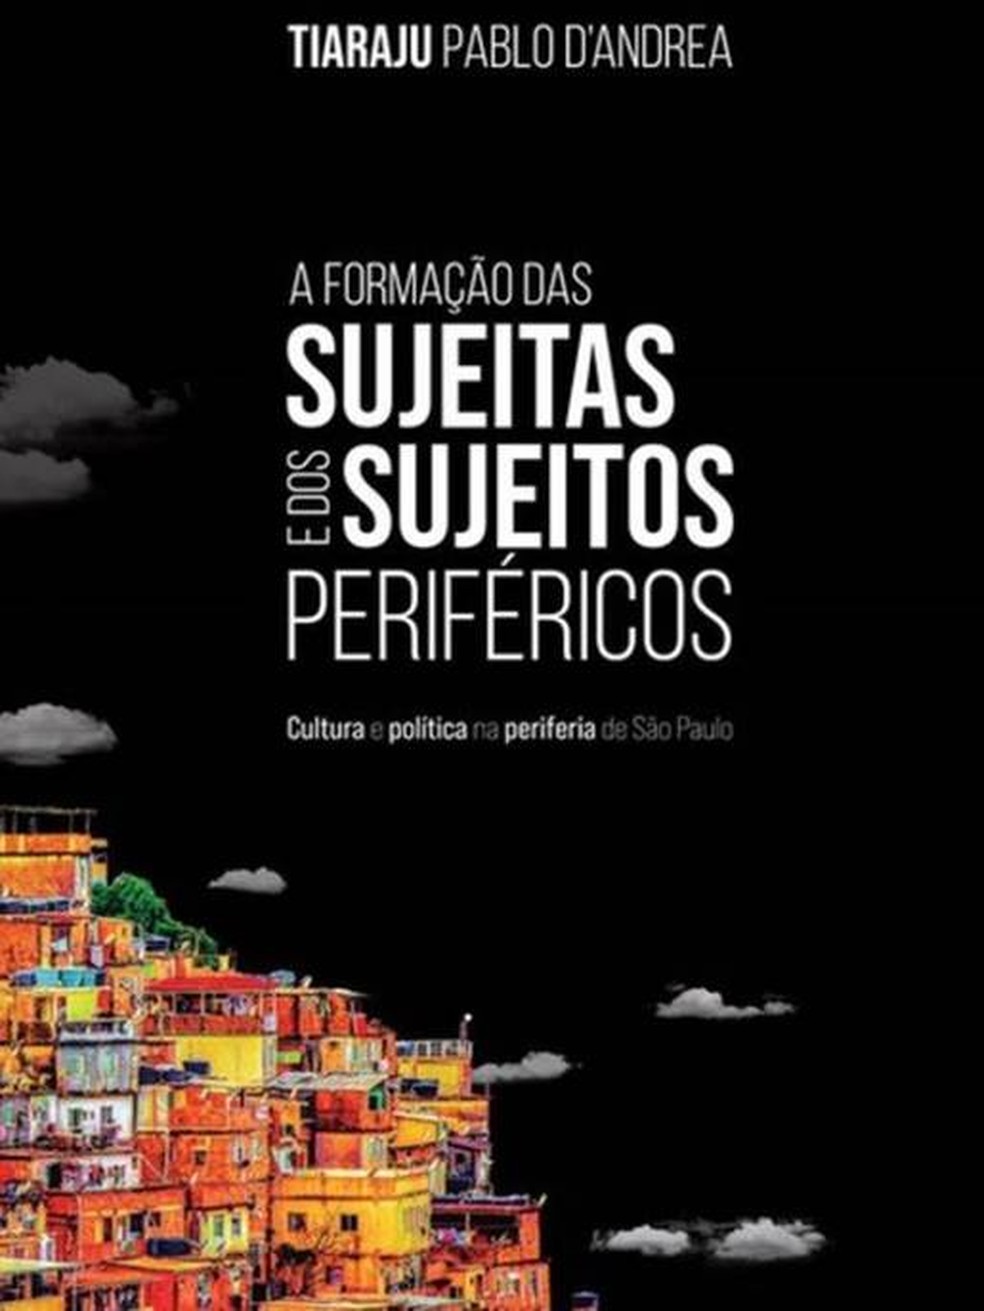 D'andrea lançou seu livro sobre os sujeitos periféricos no final de 2022 — Foto: Divulgação via BBC News Brasil